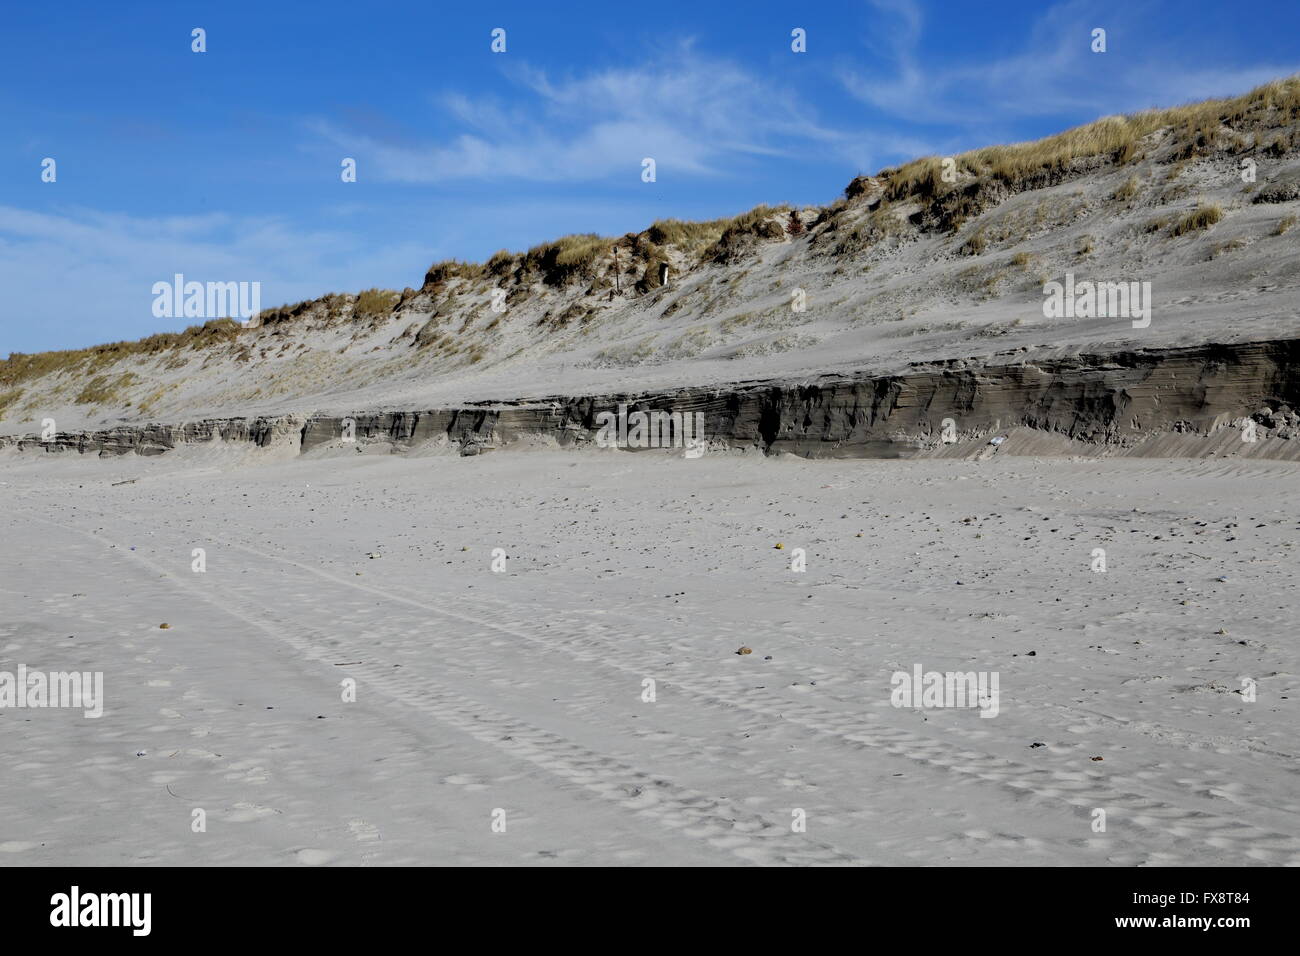 Dünen in der Nähe von Hvide Sande, Dänemark, nachdem der Sturm und Wellen die Düne erodiert haben.  Spuren der ehemaligen Sandverwehungen t entnehmen Stockfoto